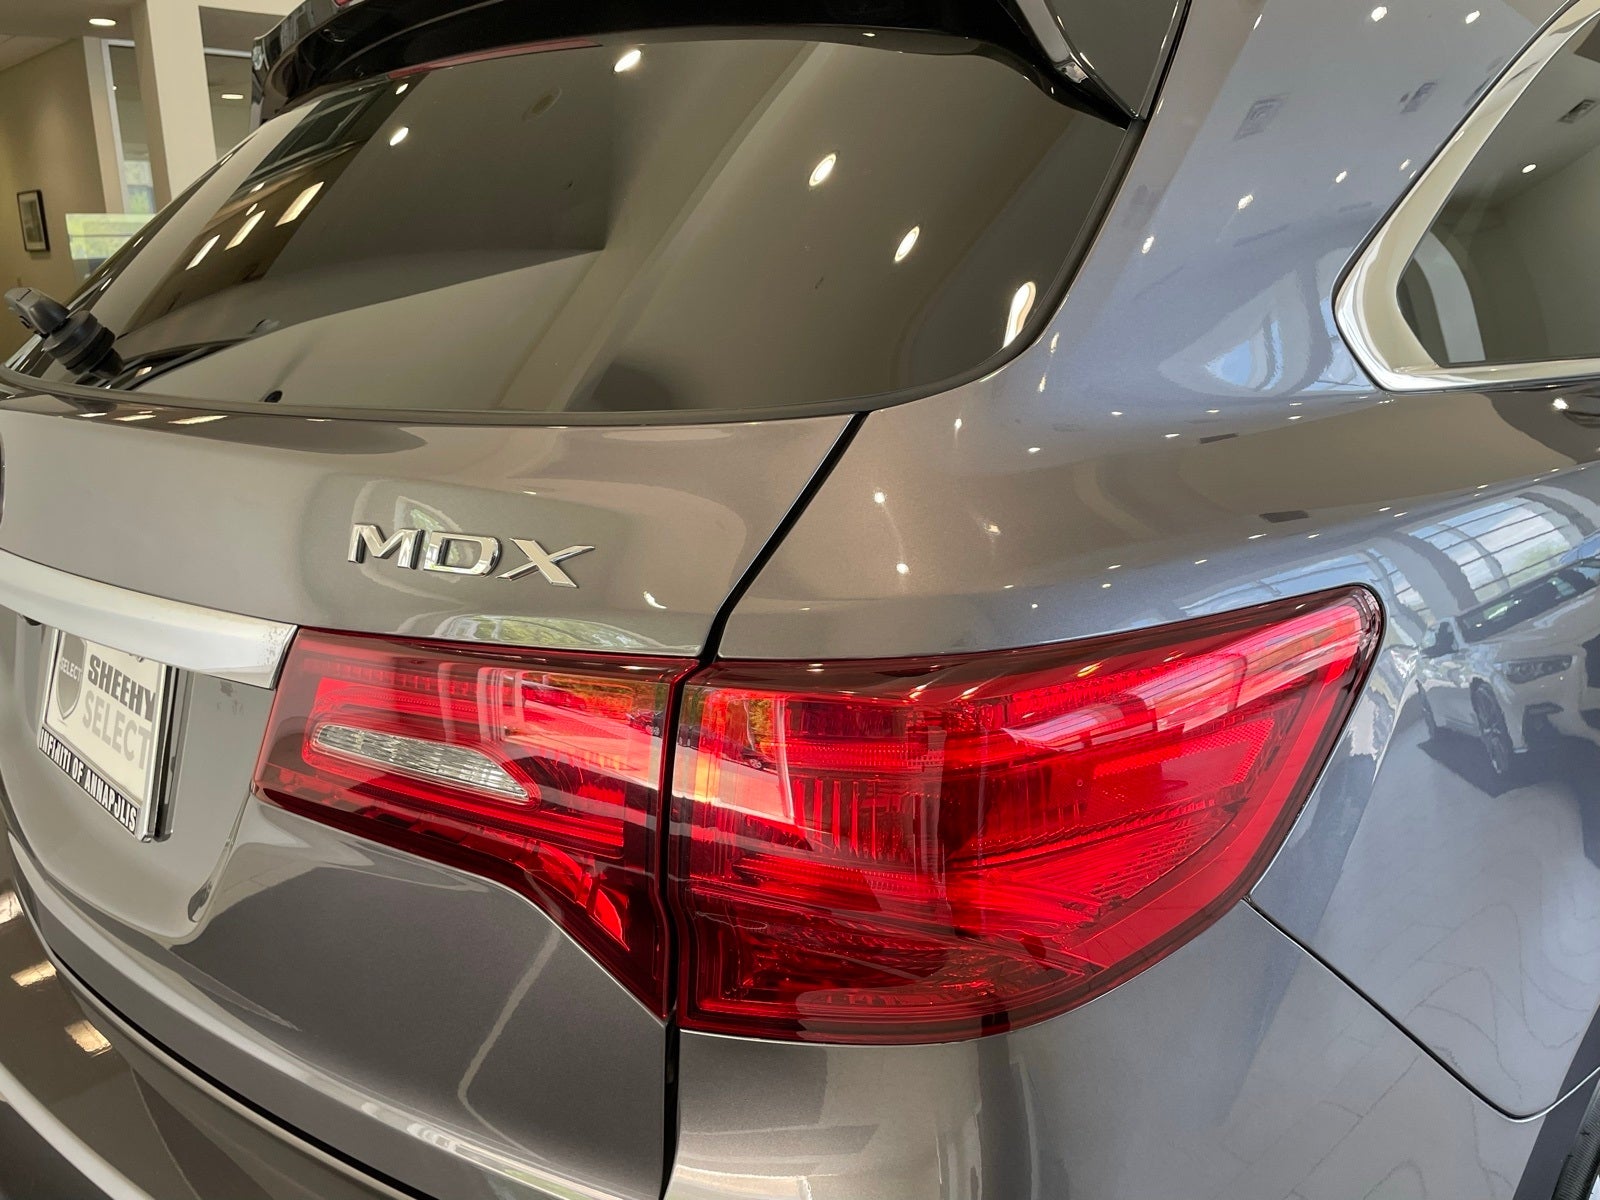 2019 Acura MDX 3.5L